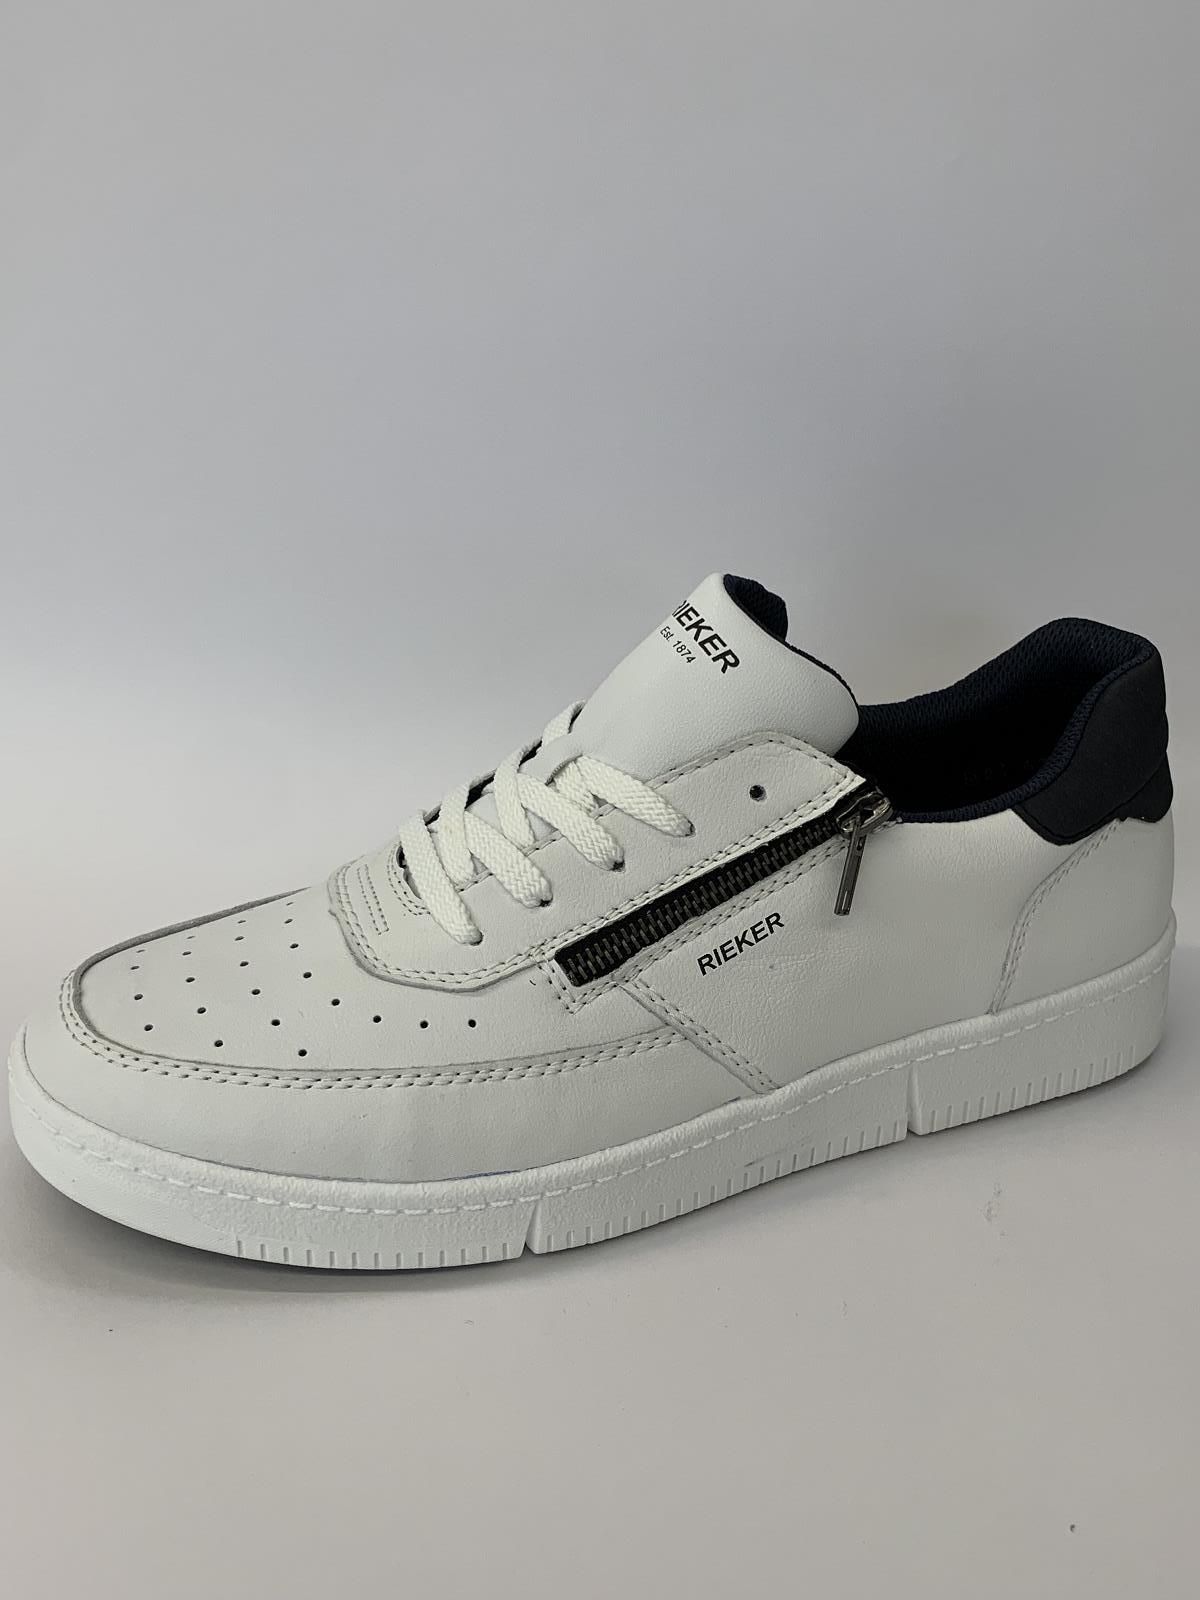 Rieker Sneaker Wit heren (Sneaker White Rits - B7106-80) - Schoenen Luca